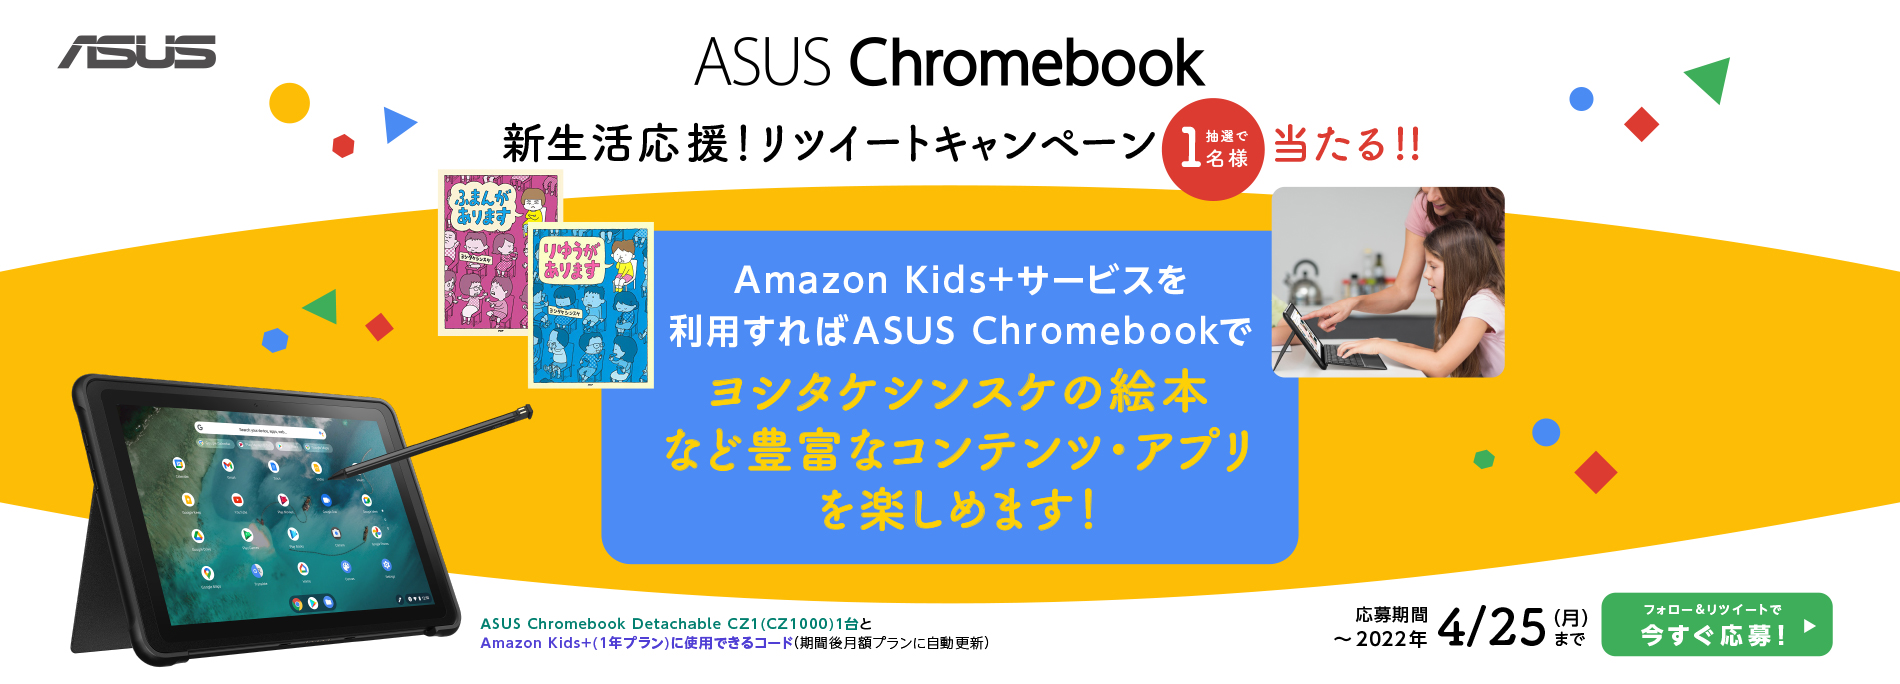 ASUS ChromebookとAmazon Kids+（１年プラン）に使用できるコードがあたる！新生活応援！リツイートキャンペーン